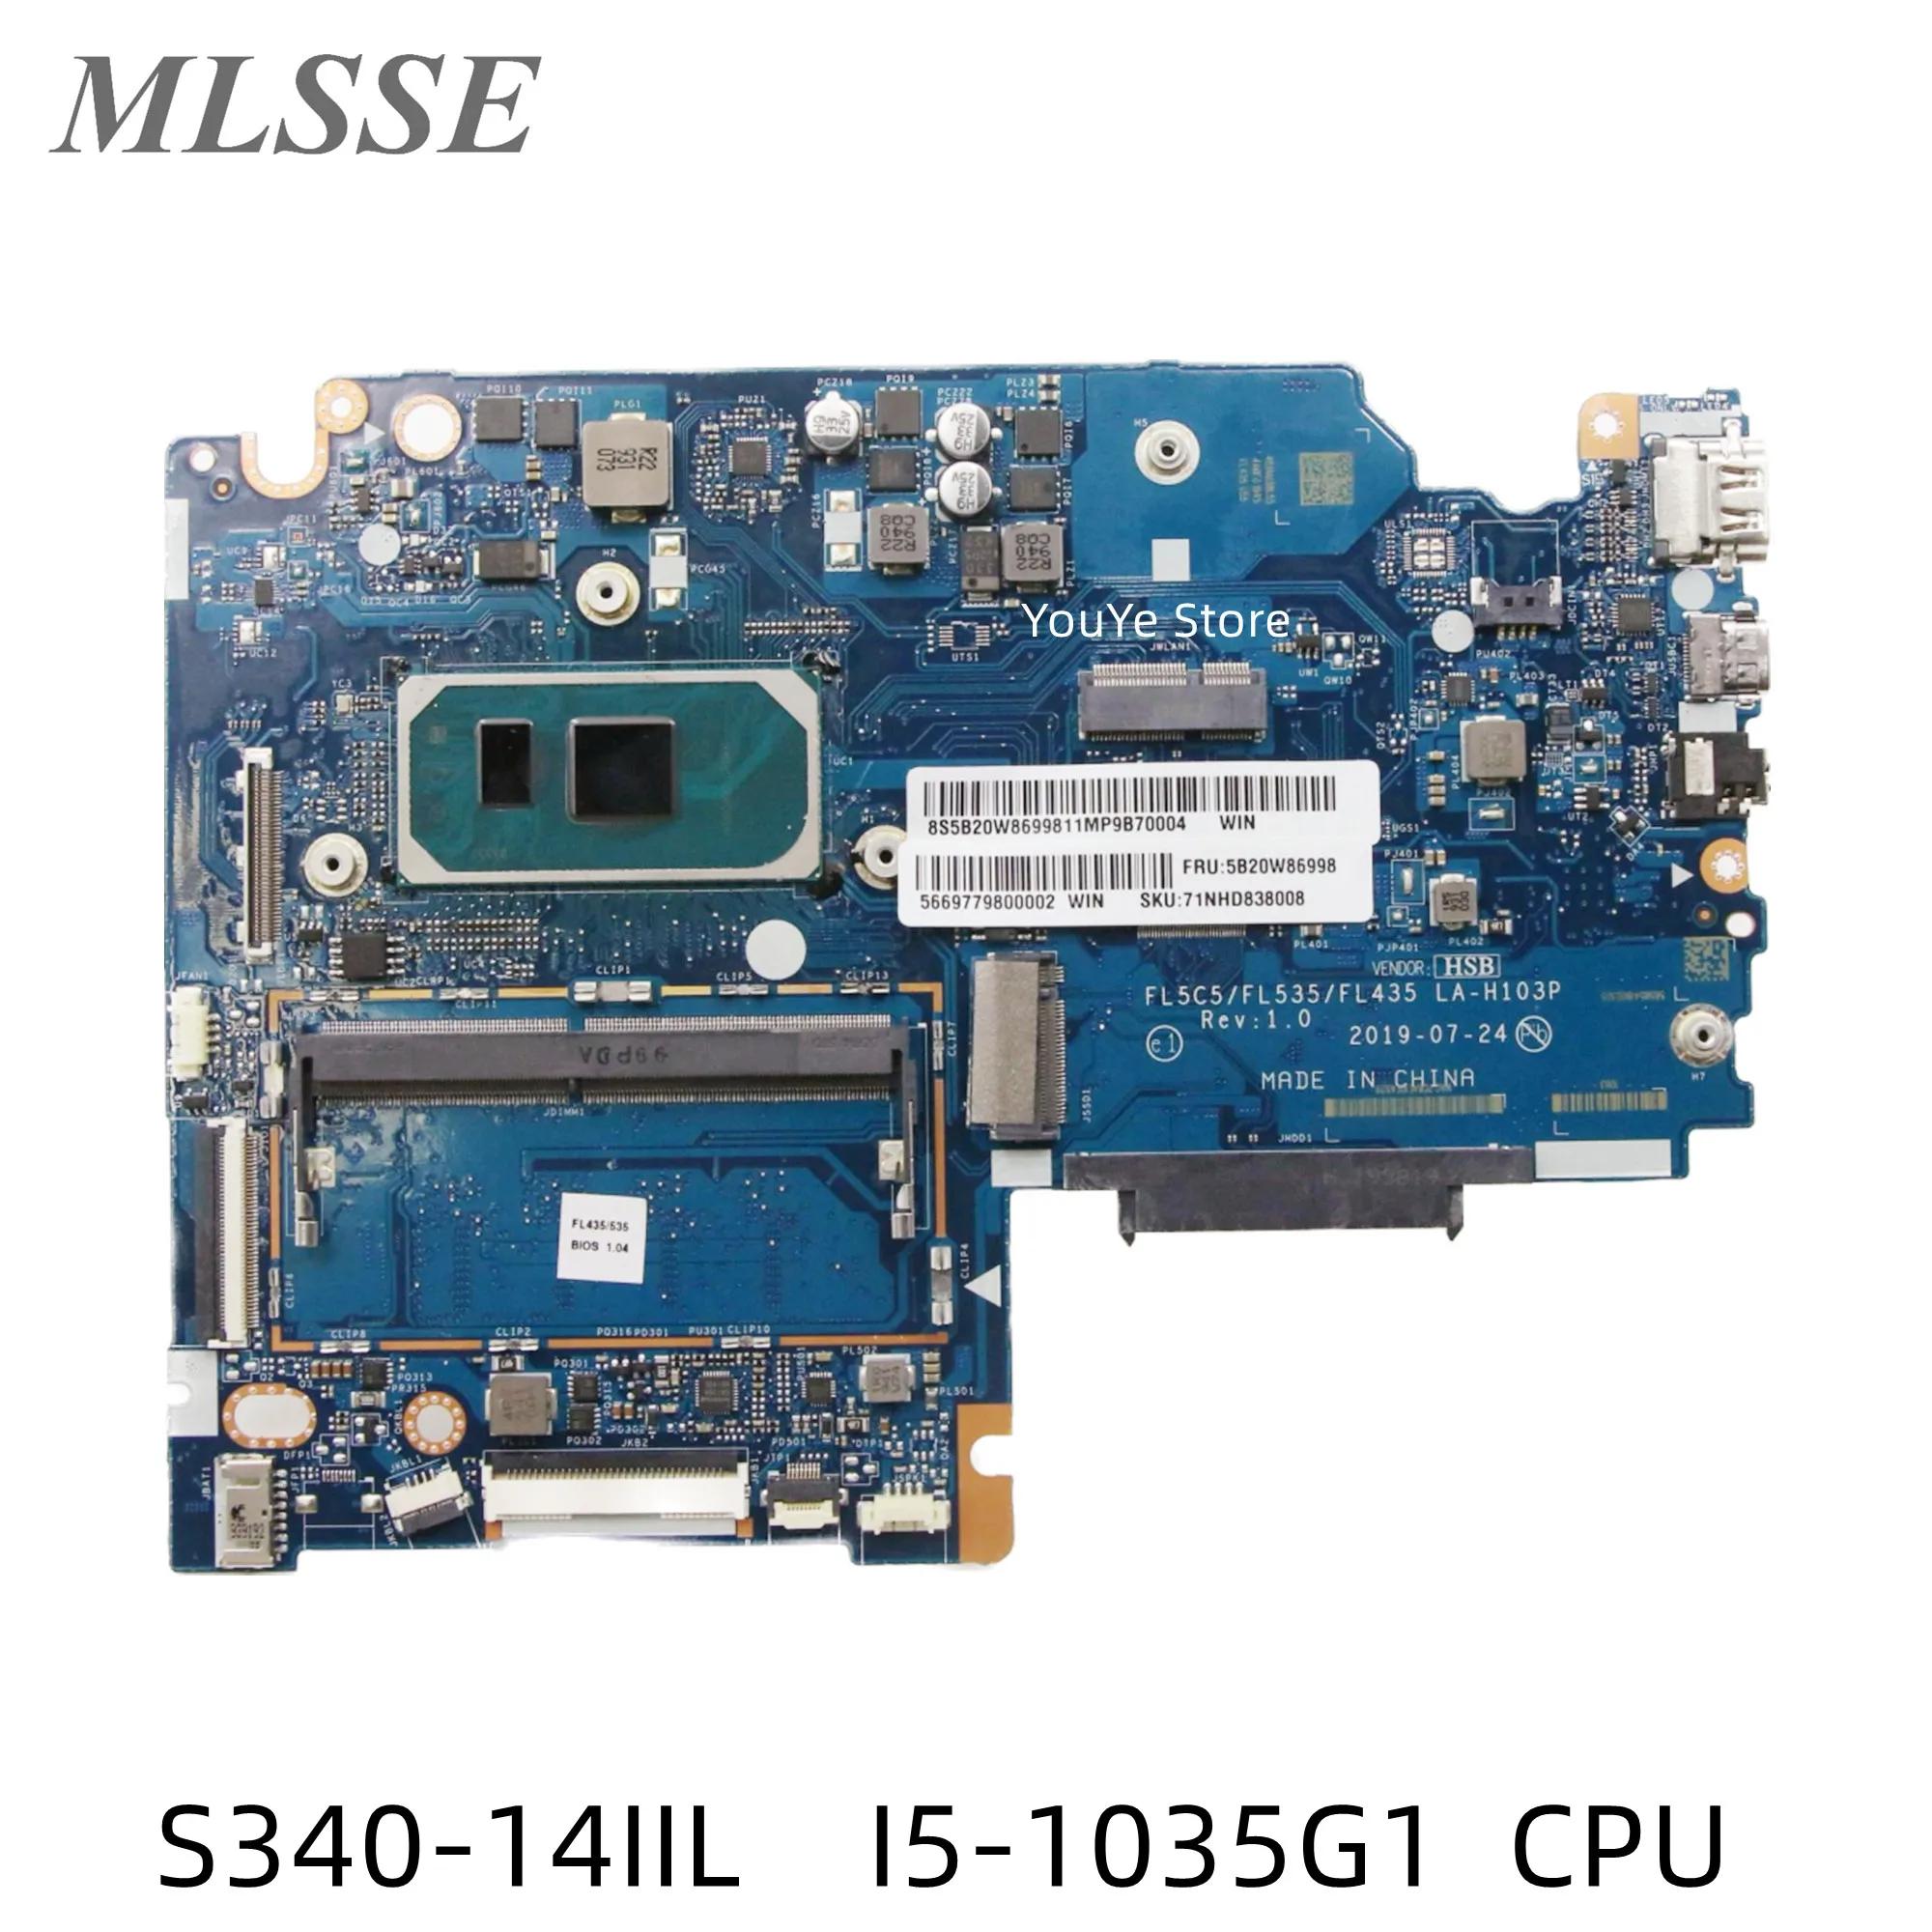  ̵е S340-14IIL Ʈ , I5-1035G1 CPU, 4G RAM, LA-H103P FL5C5, FL535, FL435, 5B20W86998,